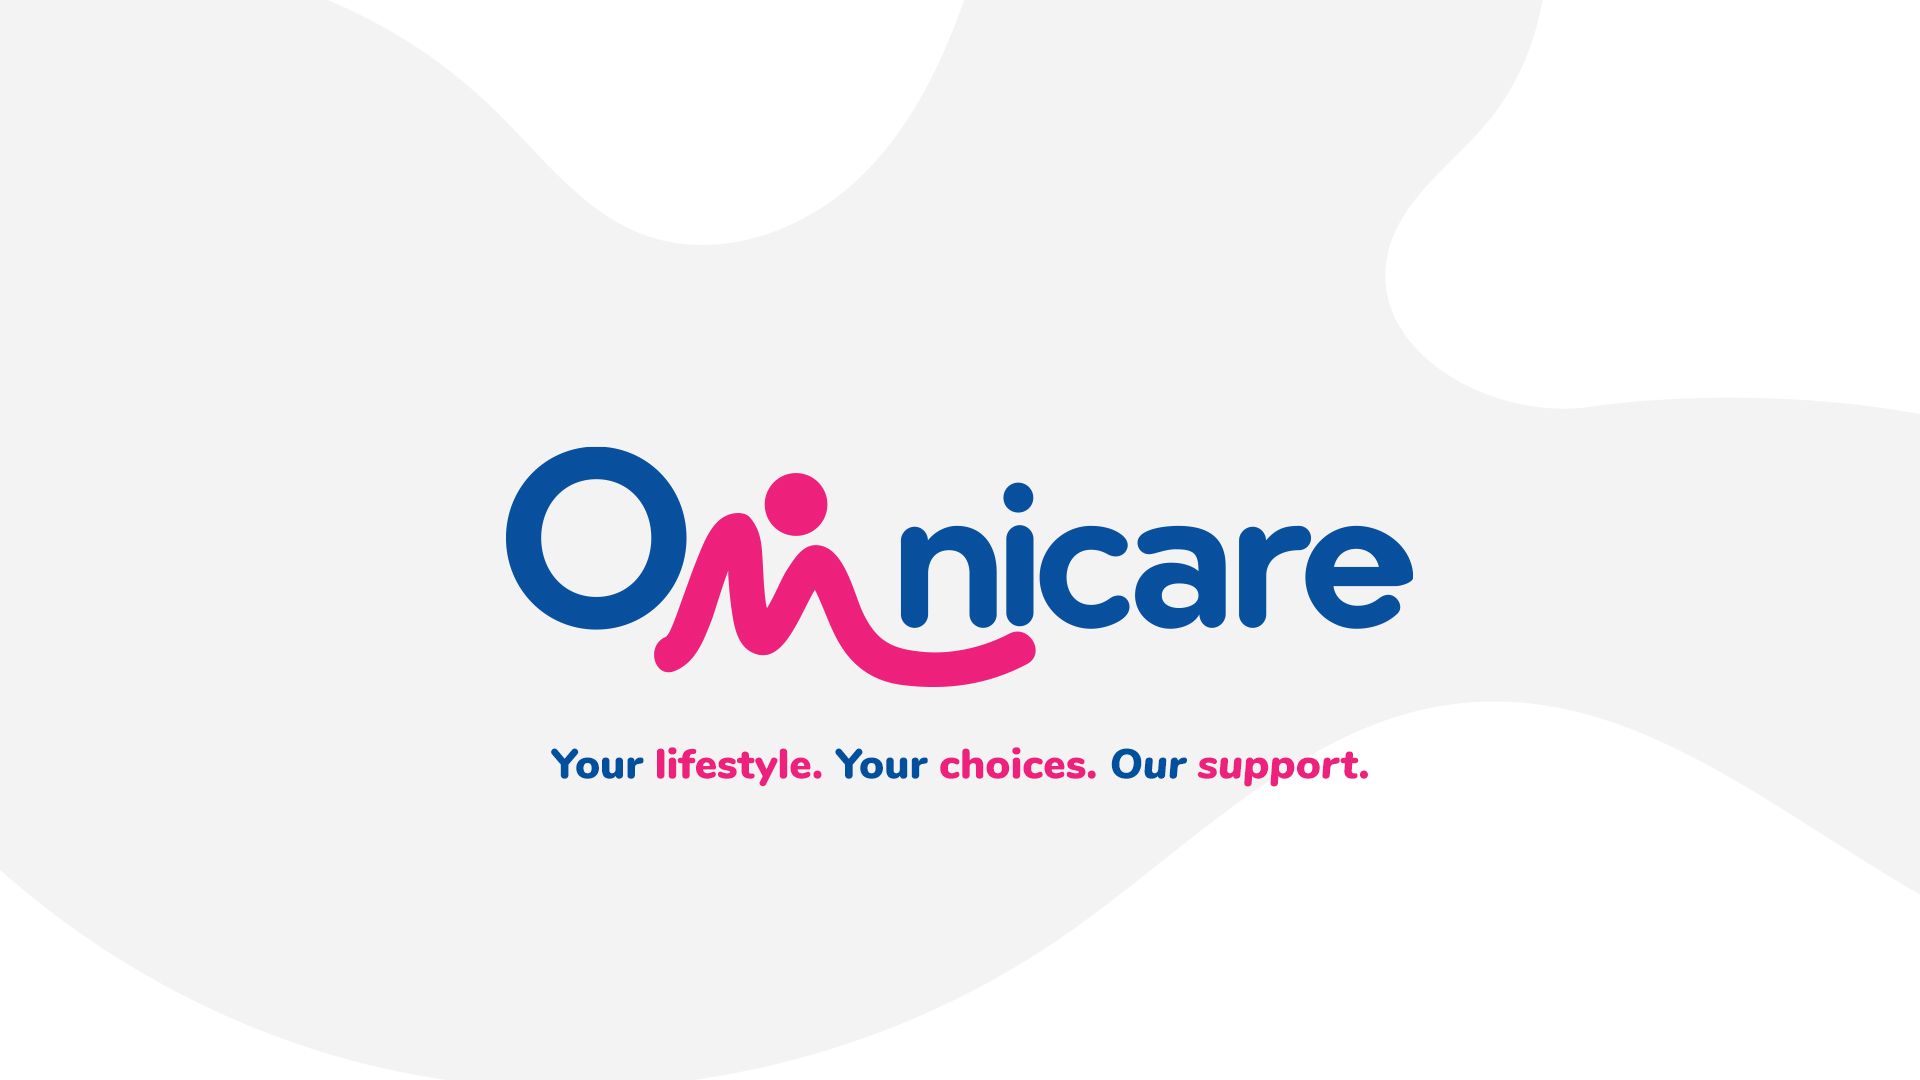 Website Redesign for Omnicare